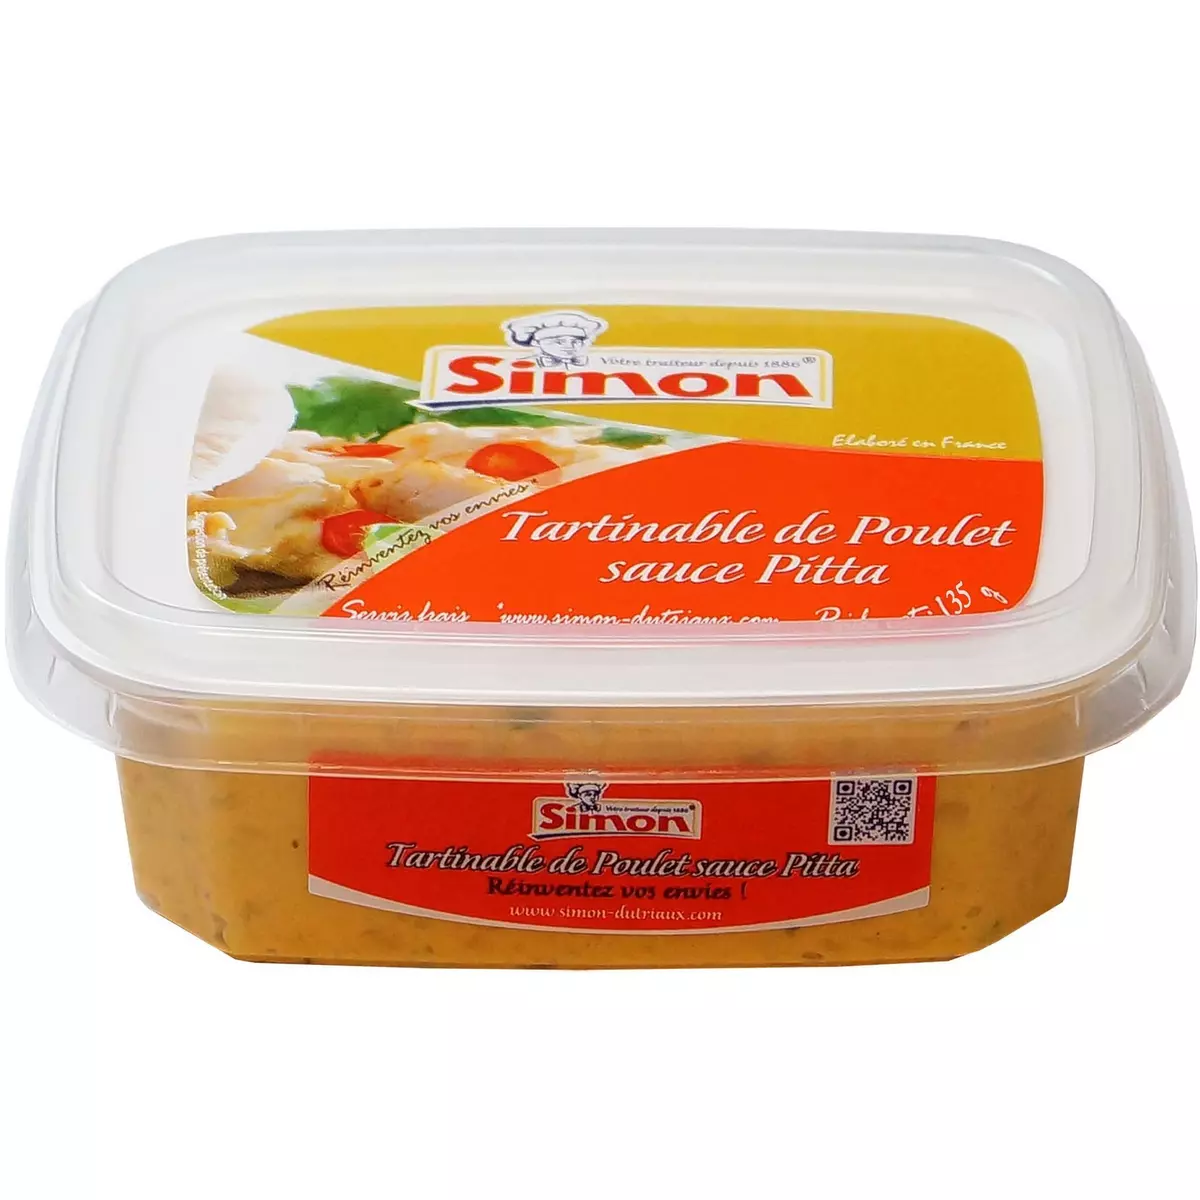 SIMON Tartinable de poulet sauce pitta 135g